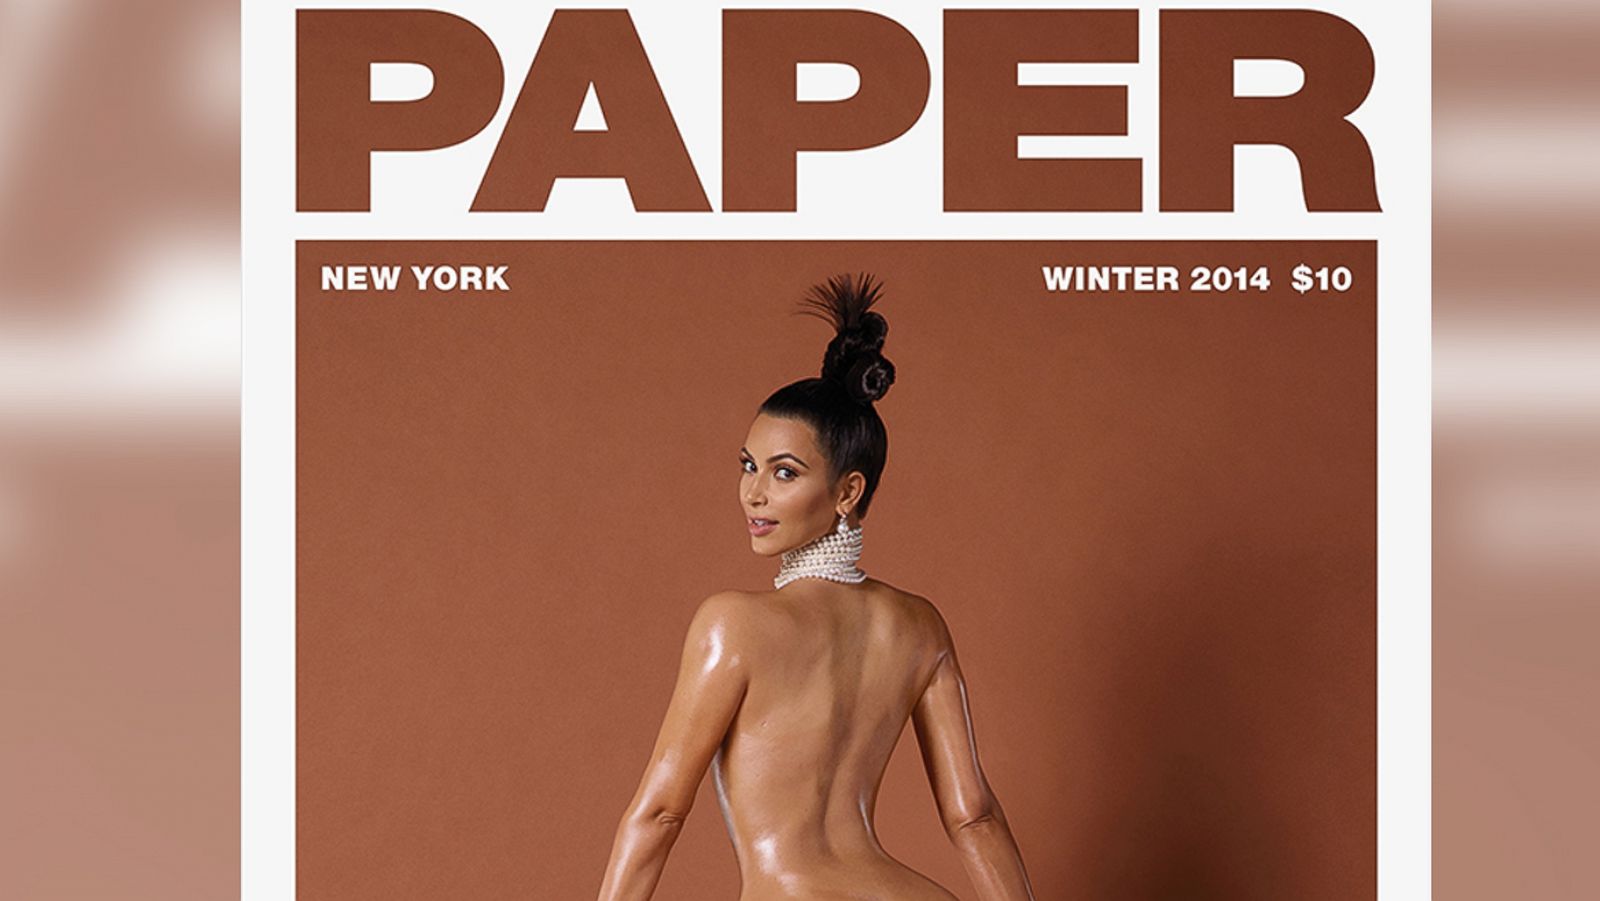 1600px x 901px - Why Kim Kardashian Decided to Show Full-Frontal Nudity - ABC News